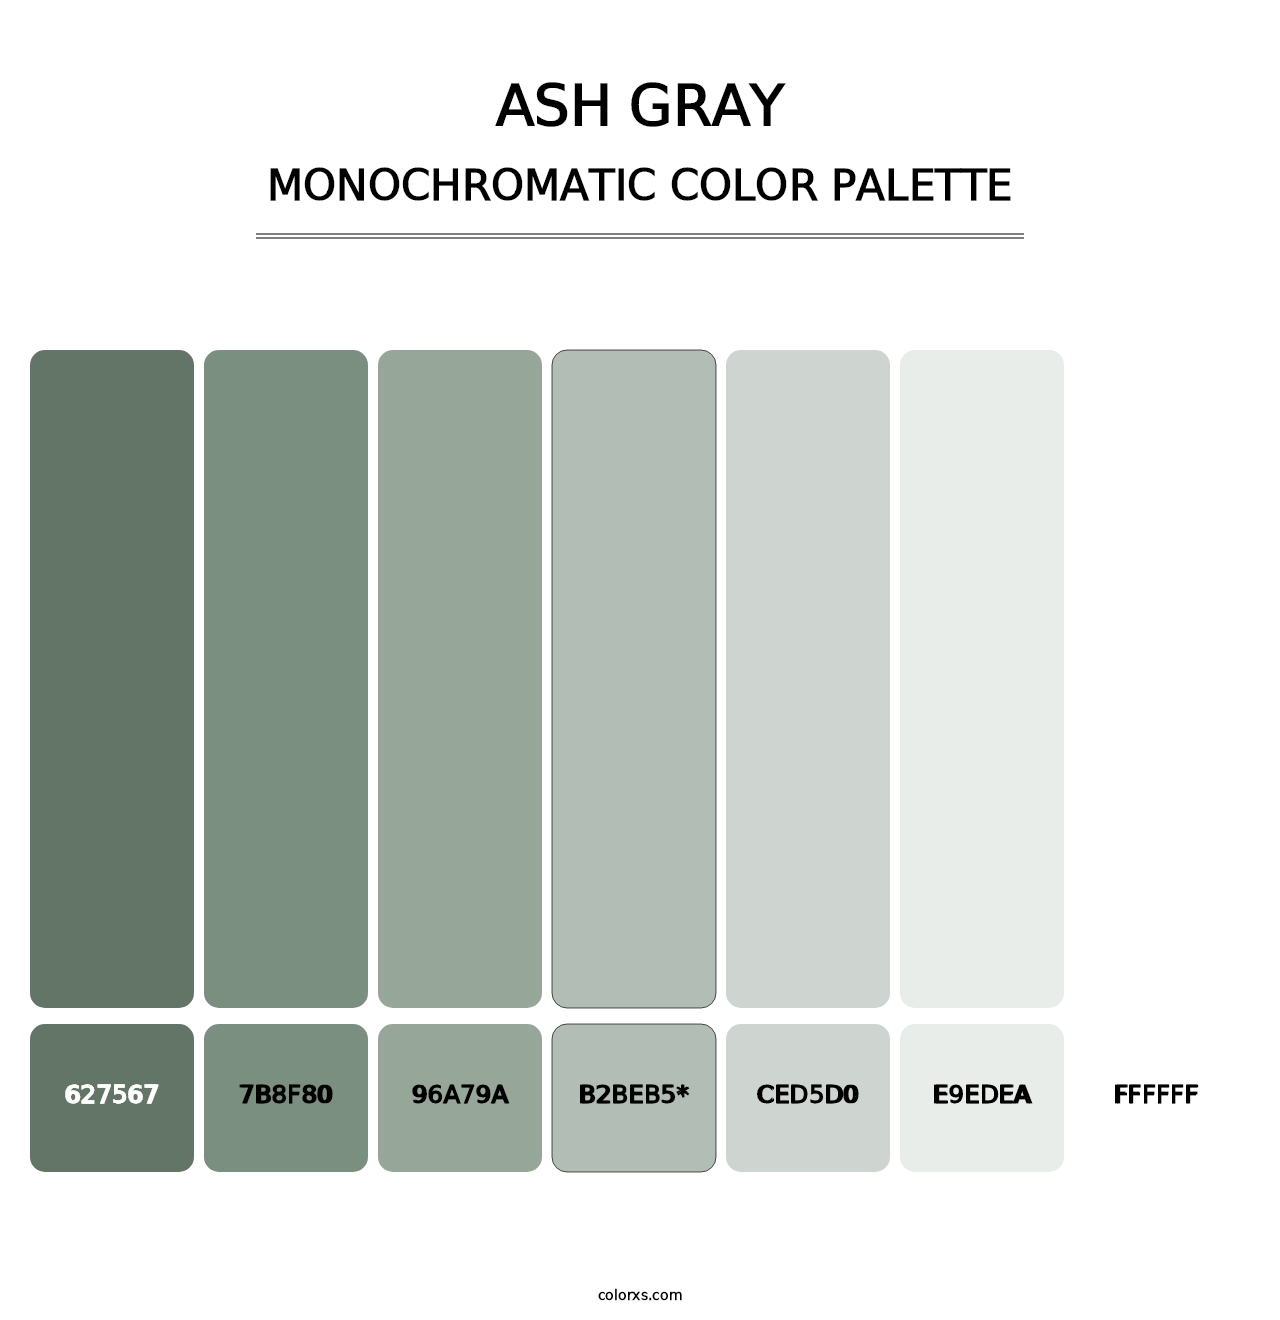 Ash Gray - Monochromatic Color Palette